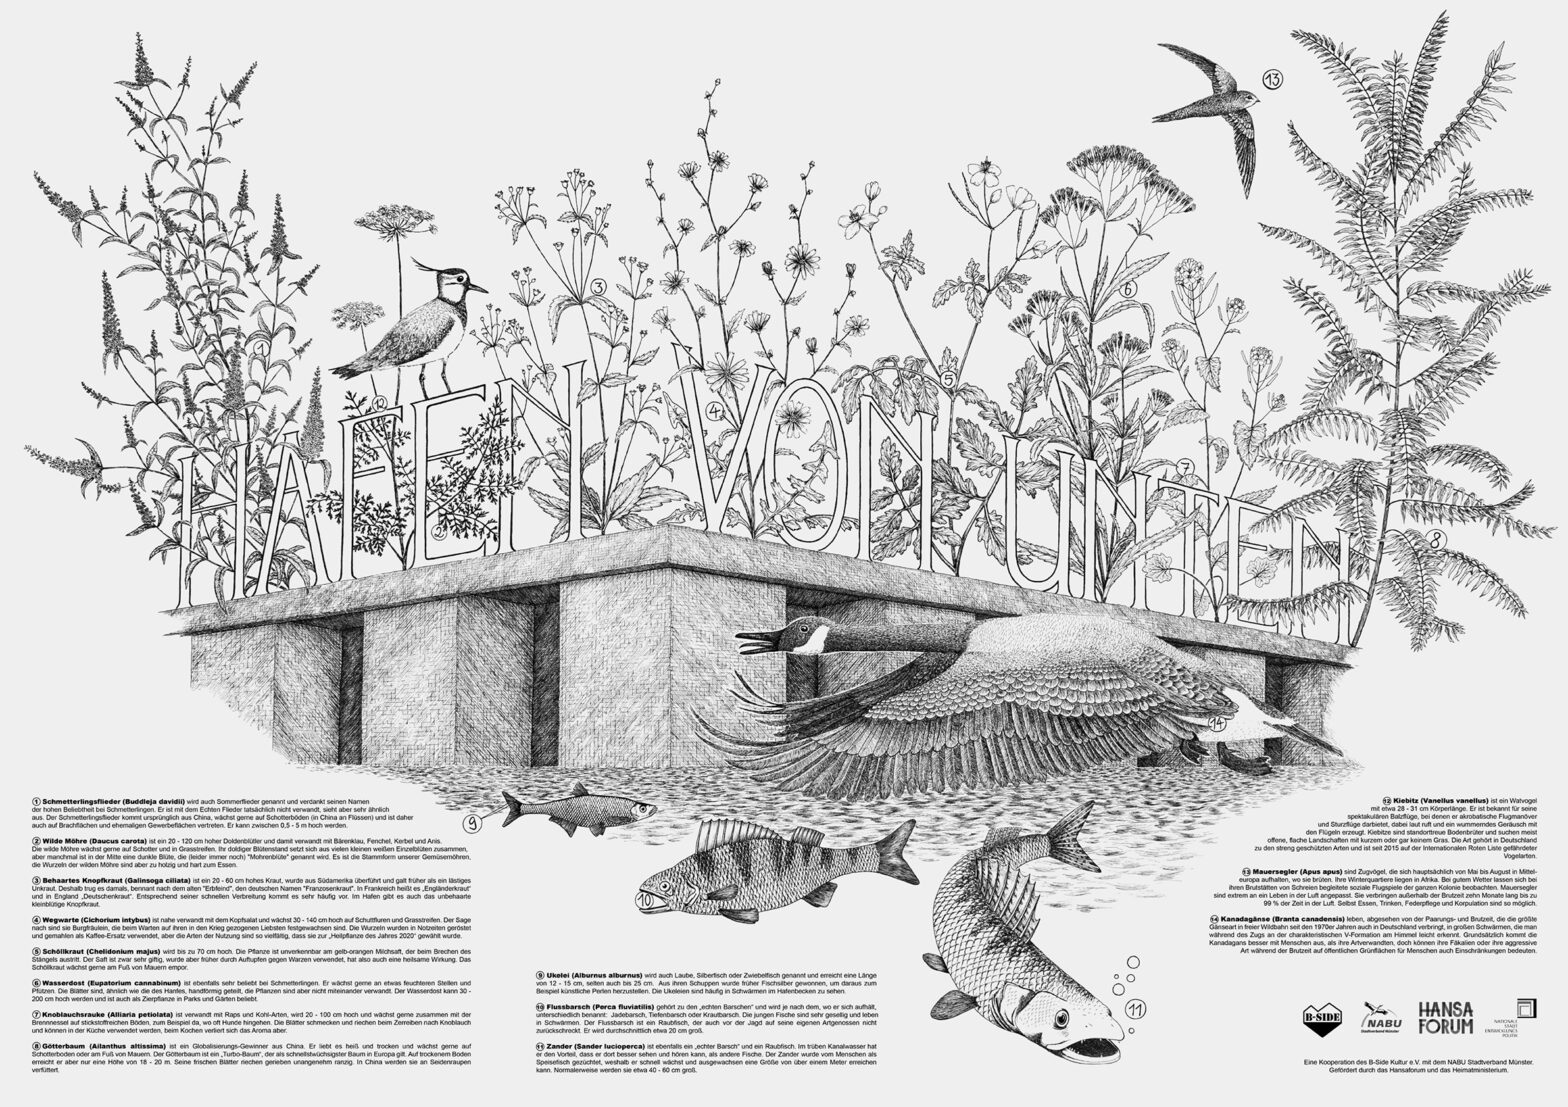 Illustration der Tier- und Pflanzenwelt des Hafens in schwarz-weiß